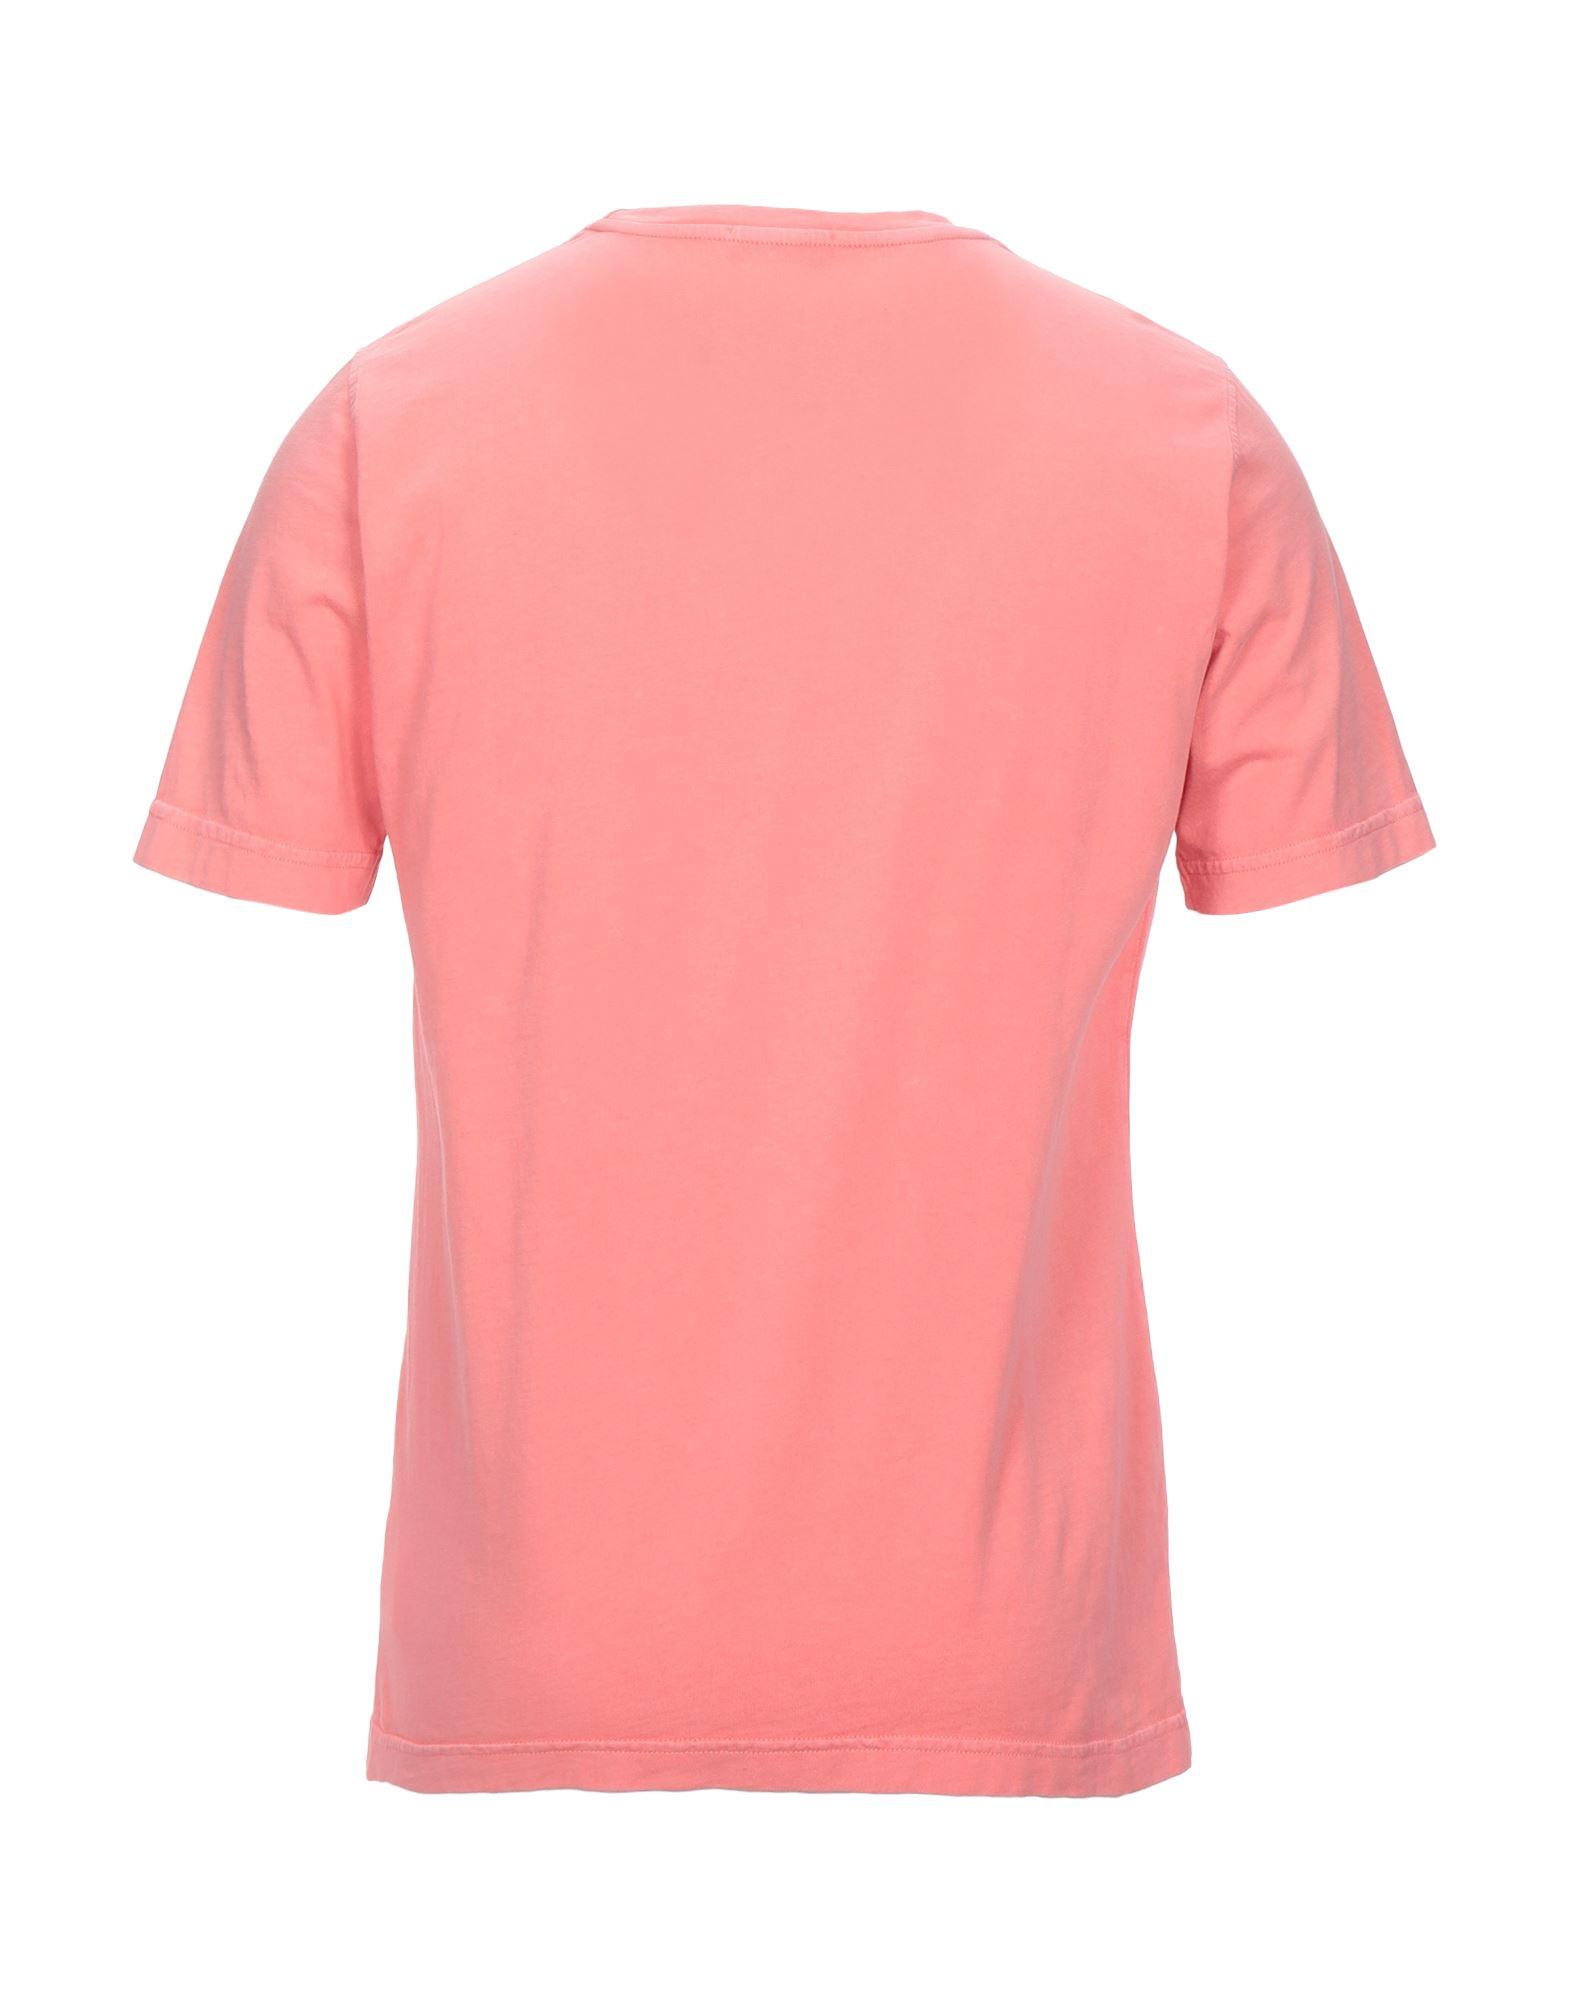 Drumohr Cotton T-shirt in Salmon Pink (Pink) for Men - Lyst